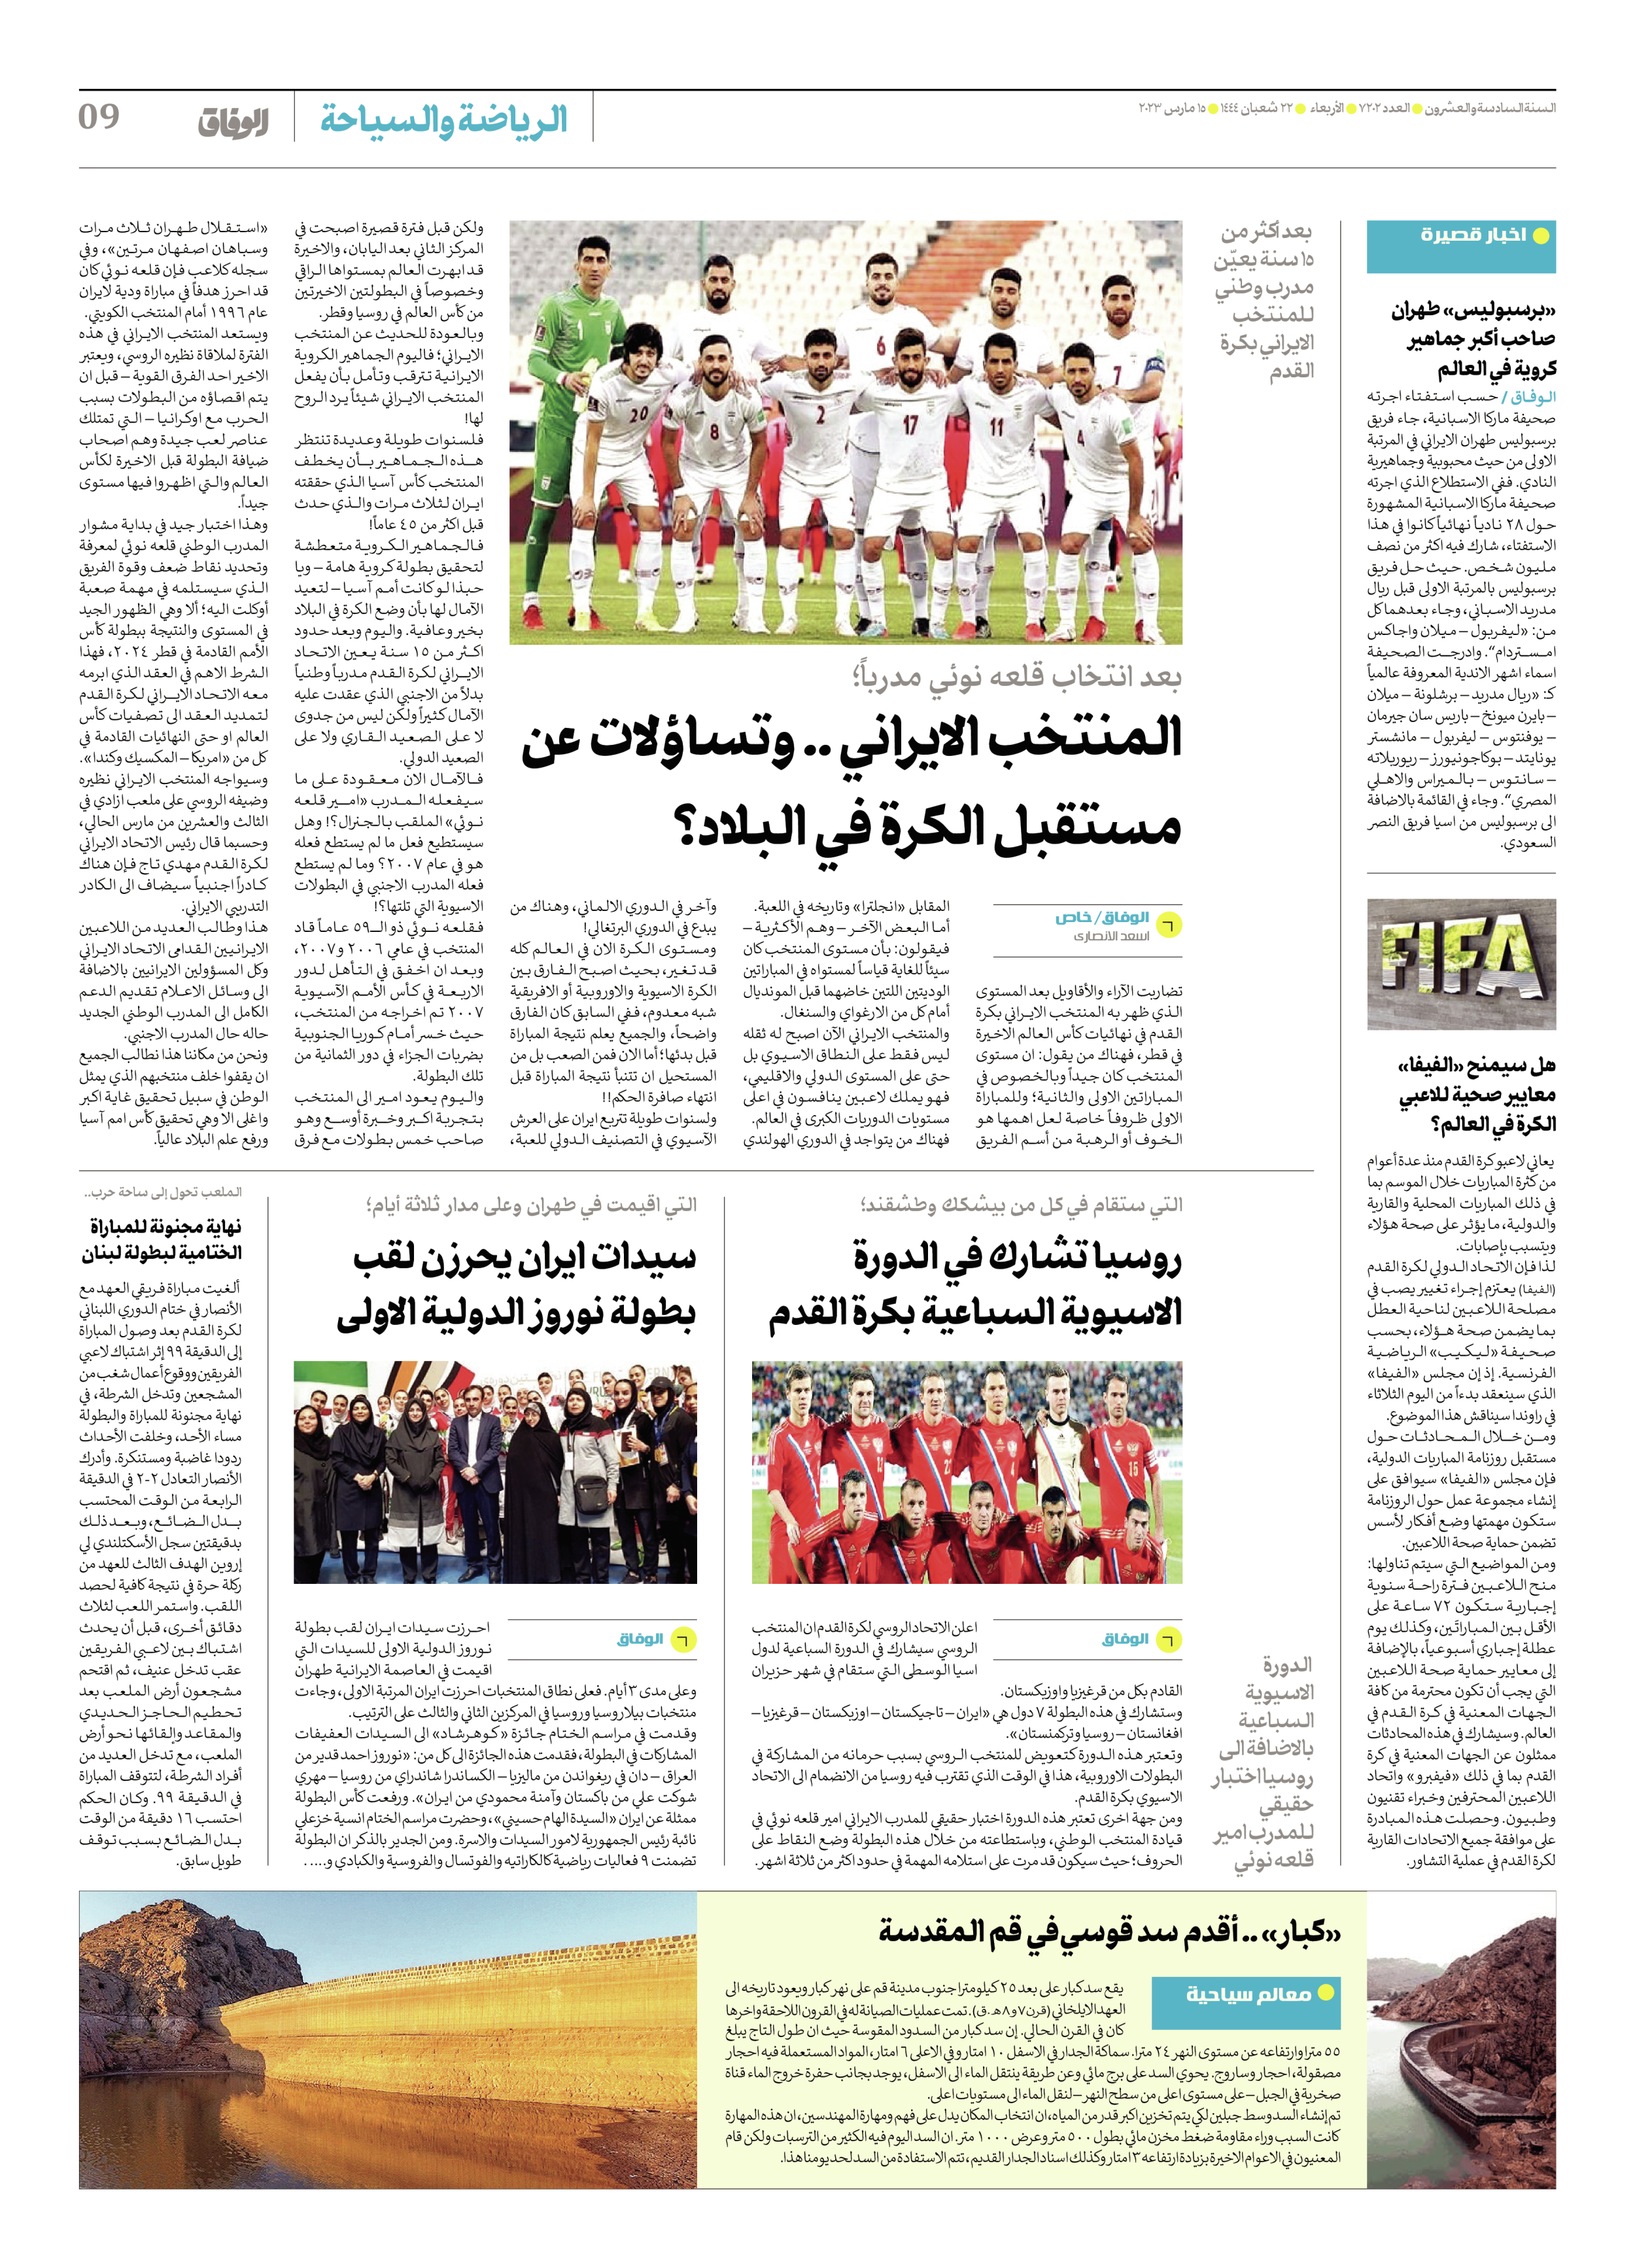 صحیفة ایران الدولیة الوفاق - العدد سبعة آلاف ومائتان واثنان - ١٥ مارس ٢٠٢٣ - الصفحة ۹